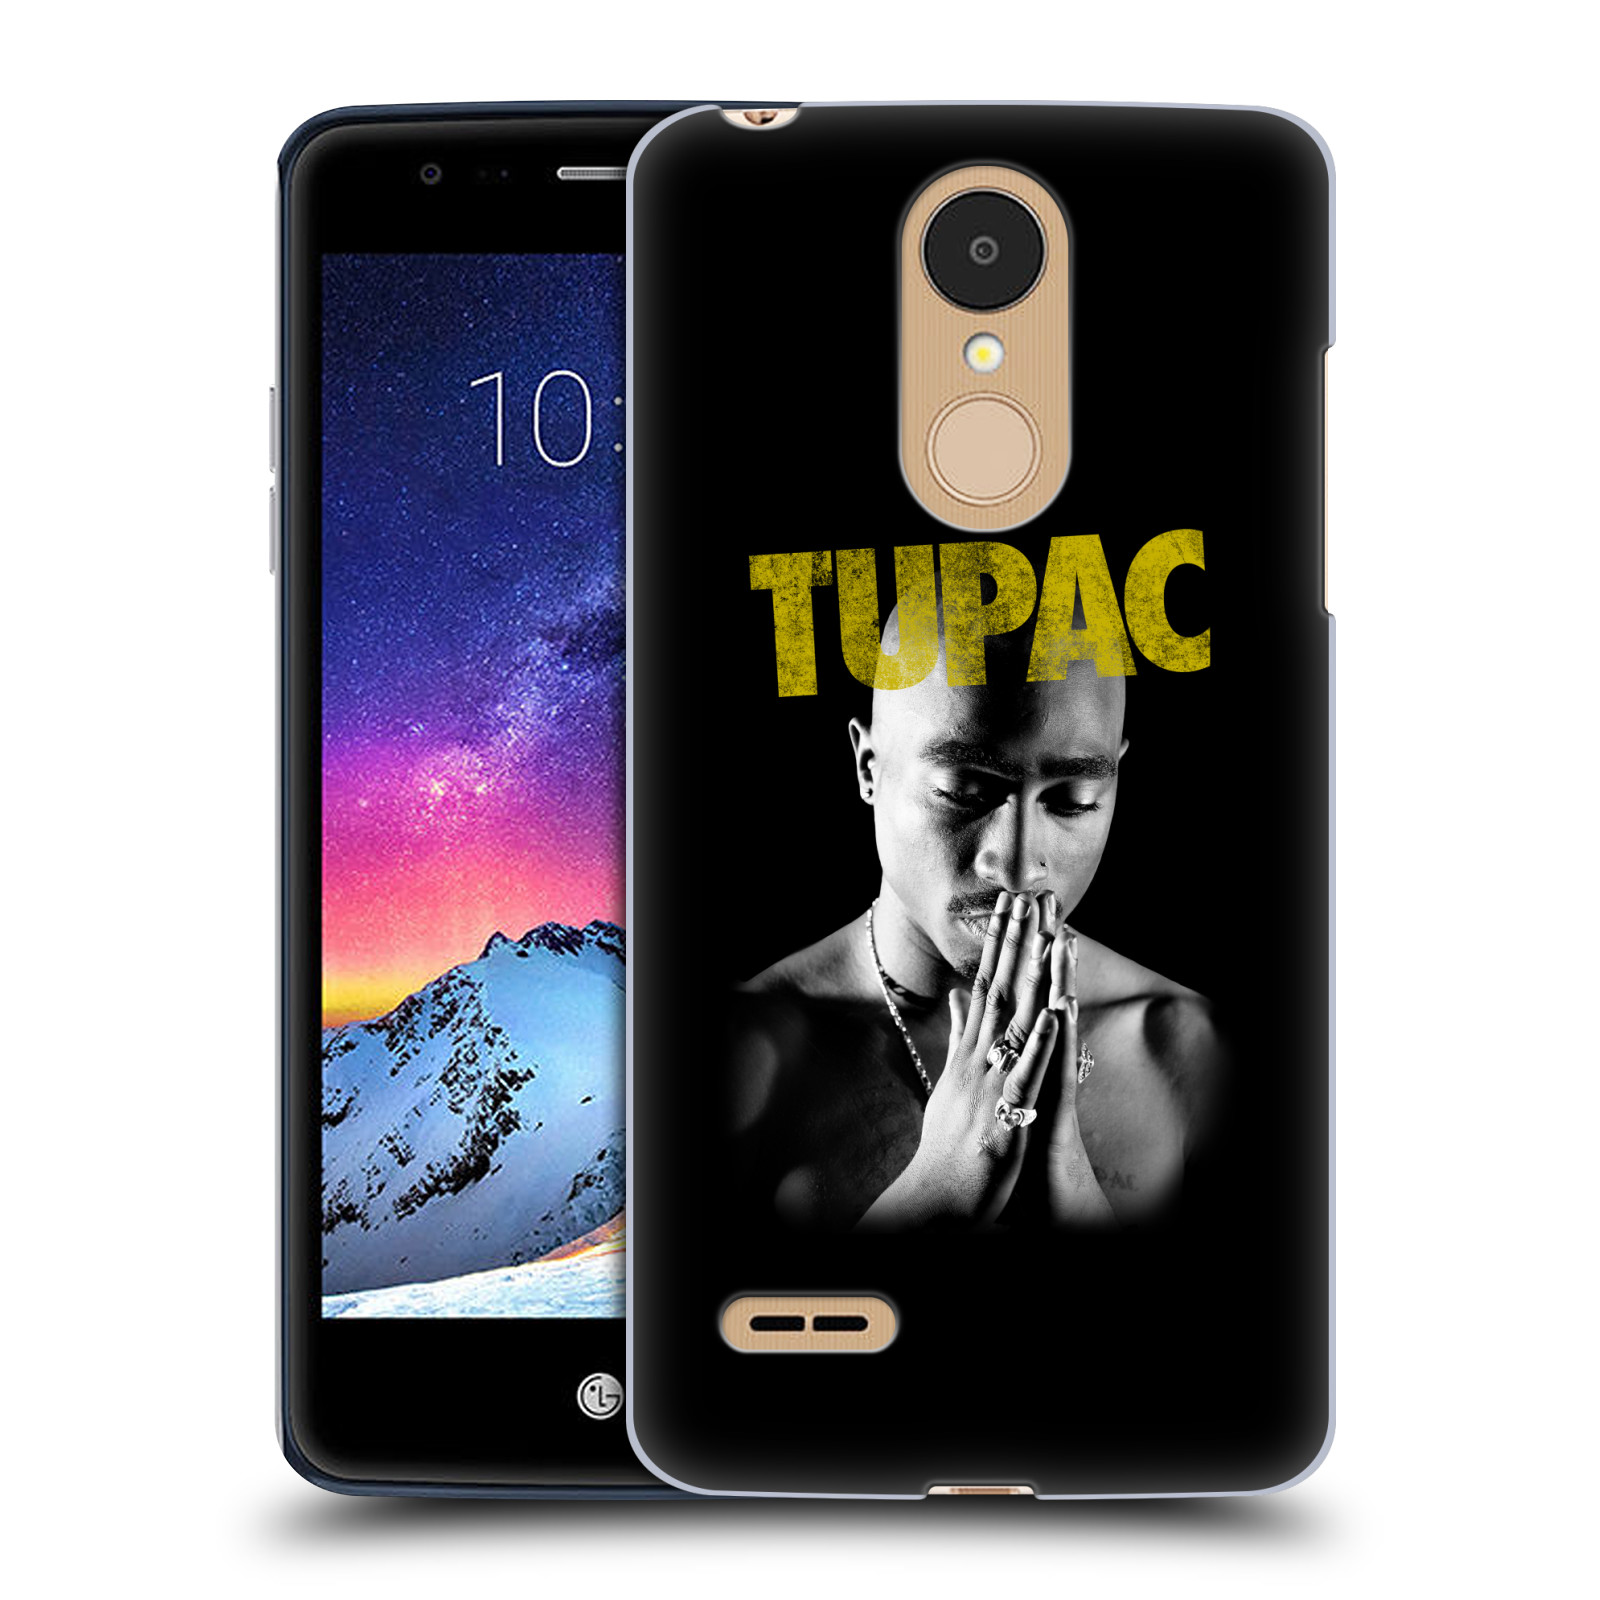 HEAD CASE plastový obal na mobil LG K9 / K8 2018 Zpěvák rapper Tupac Shakur 2Pac zlatý nadpis